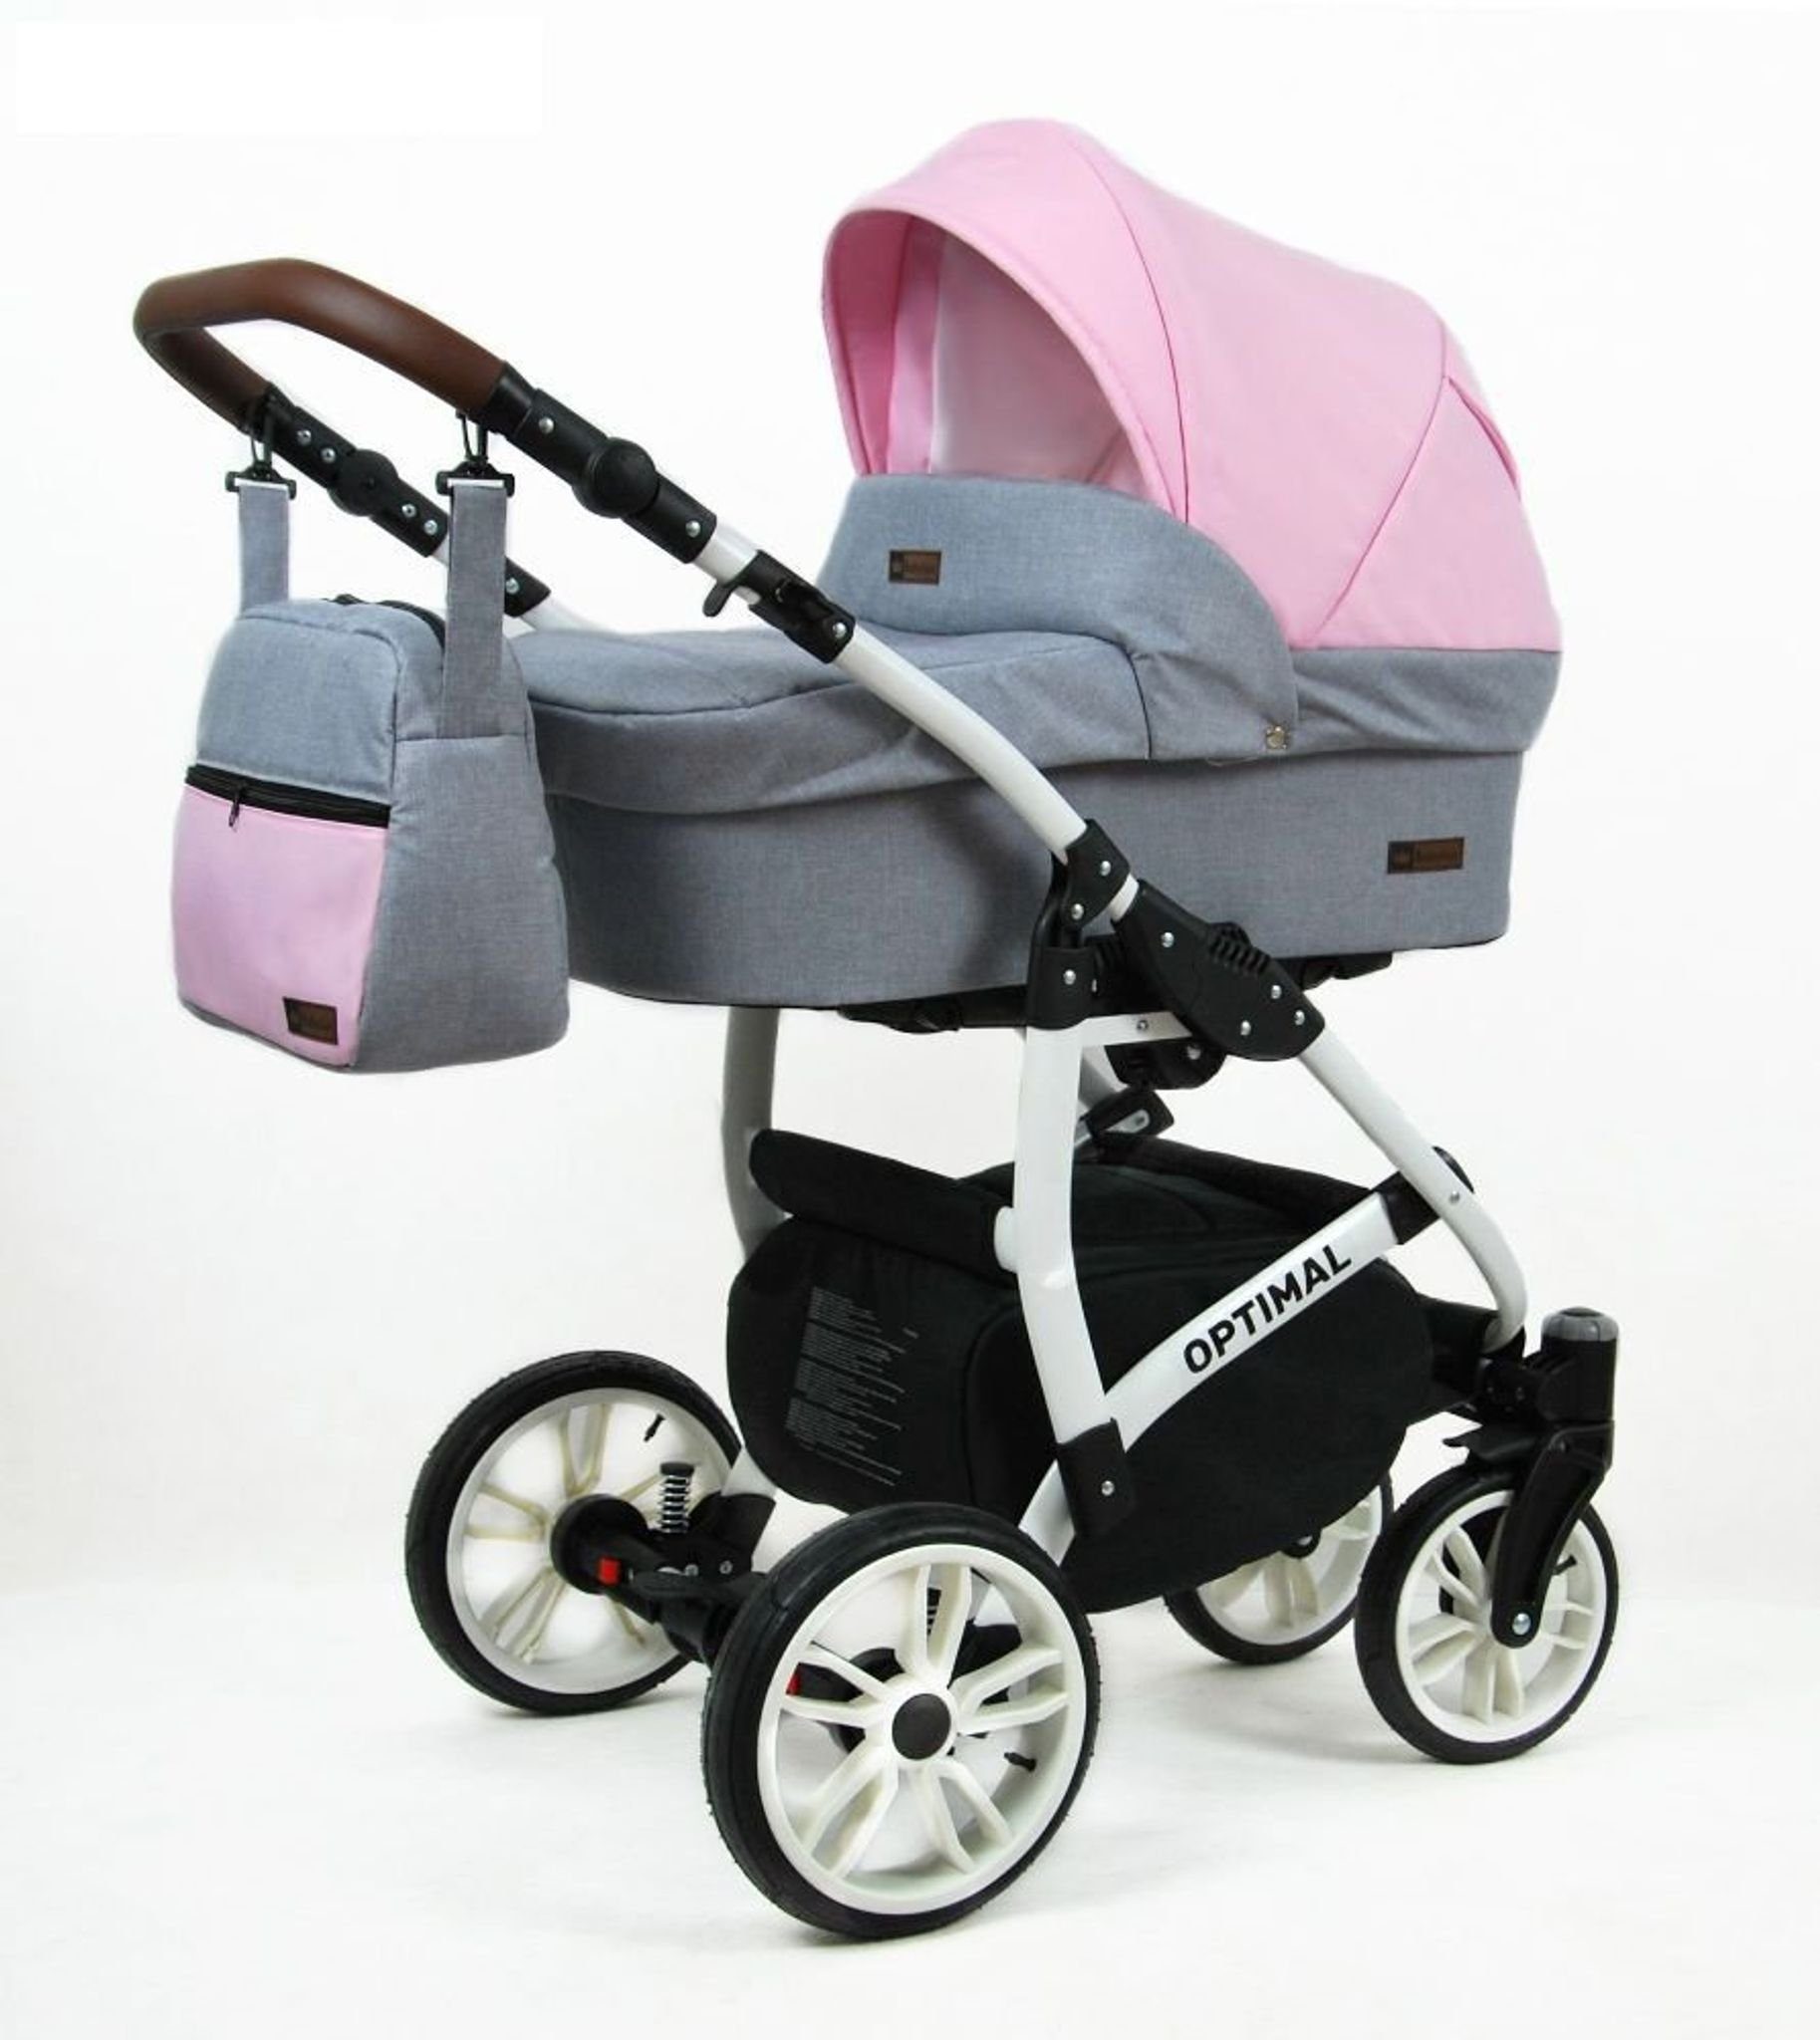 Kinder Kinderwagen Raf-Pol Kombi-Kinderwagen Polbaby Kinderwagen Optimal,3in1 -Set Wanne Buggy Babyschale Autositz mit Zubehör L